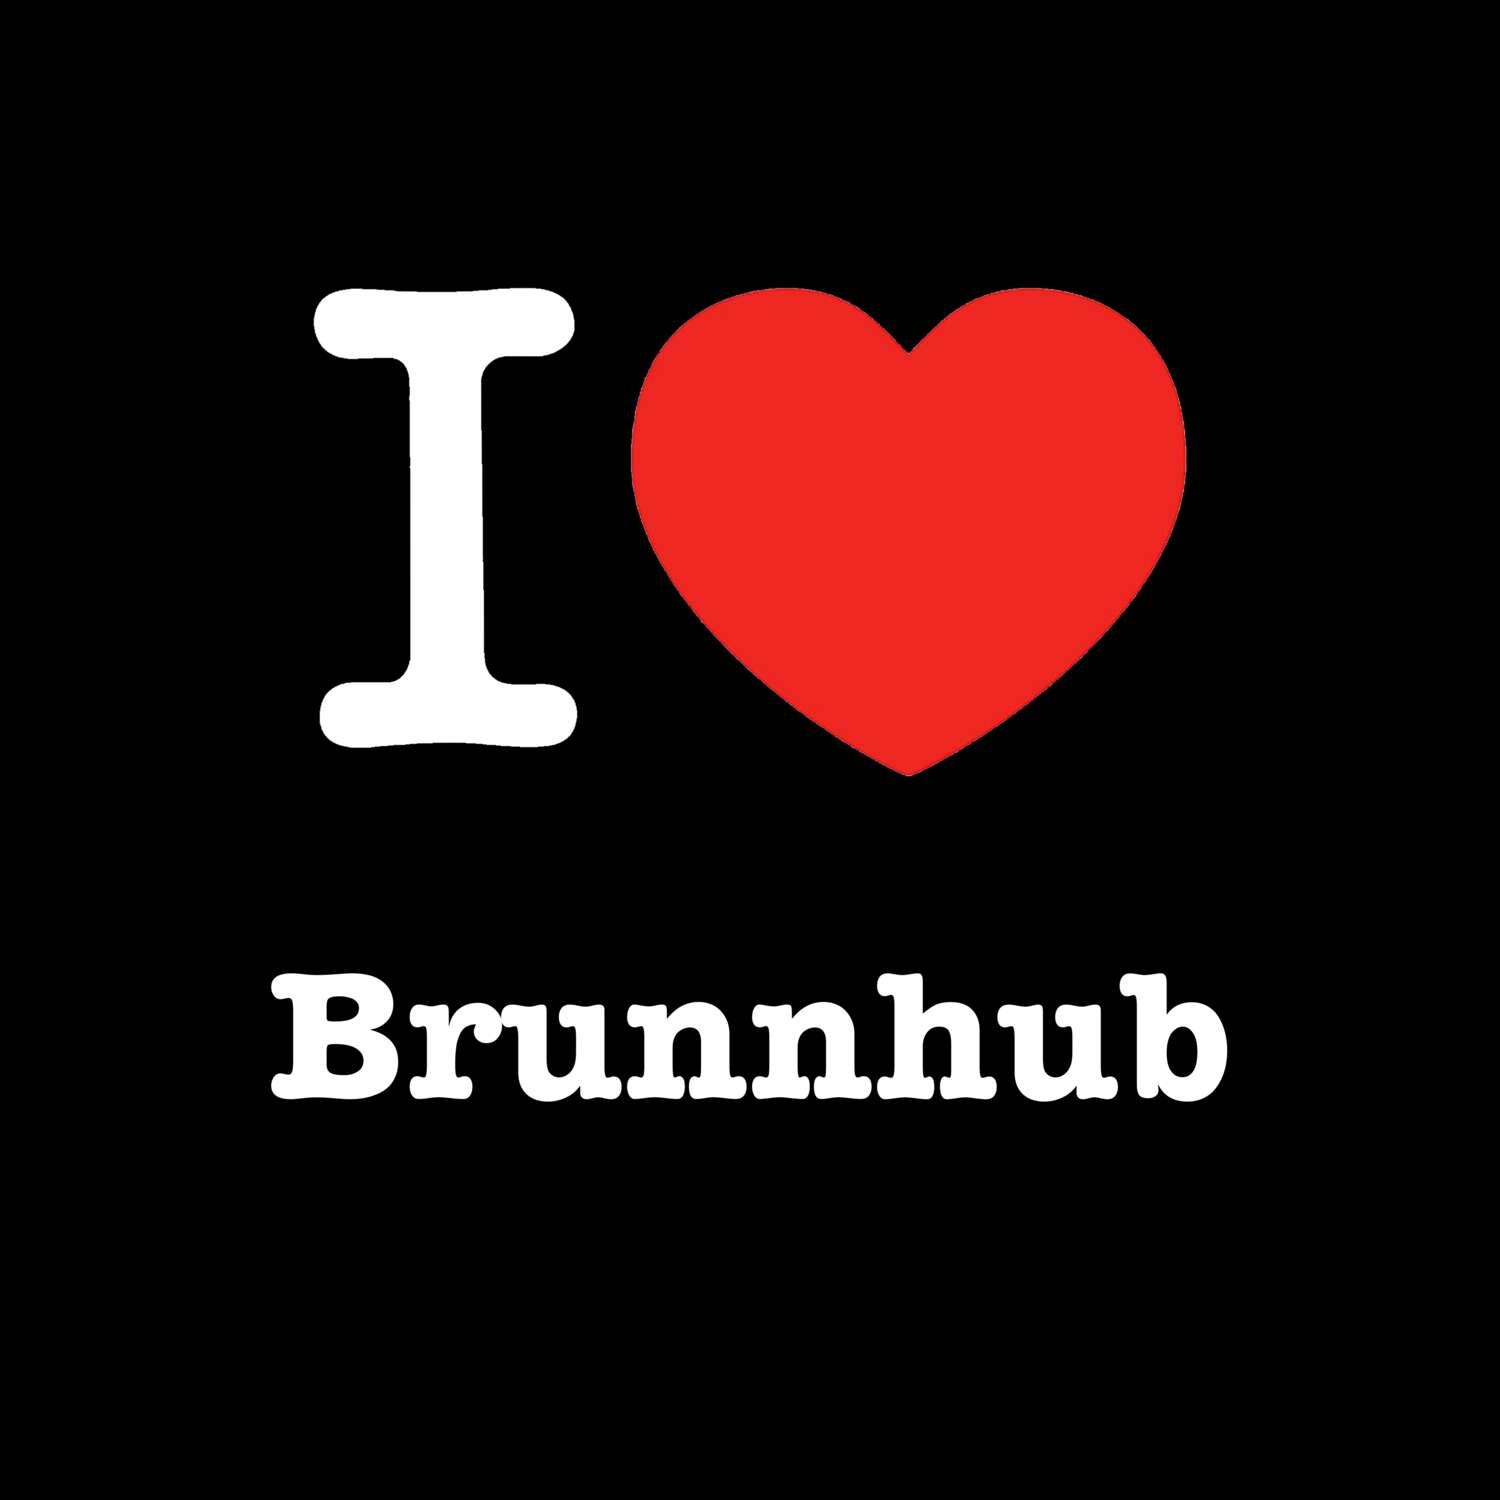 Brunnhub T-Shirt »I love«